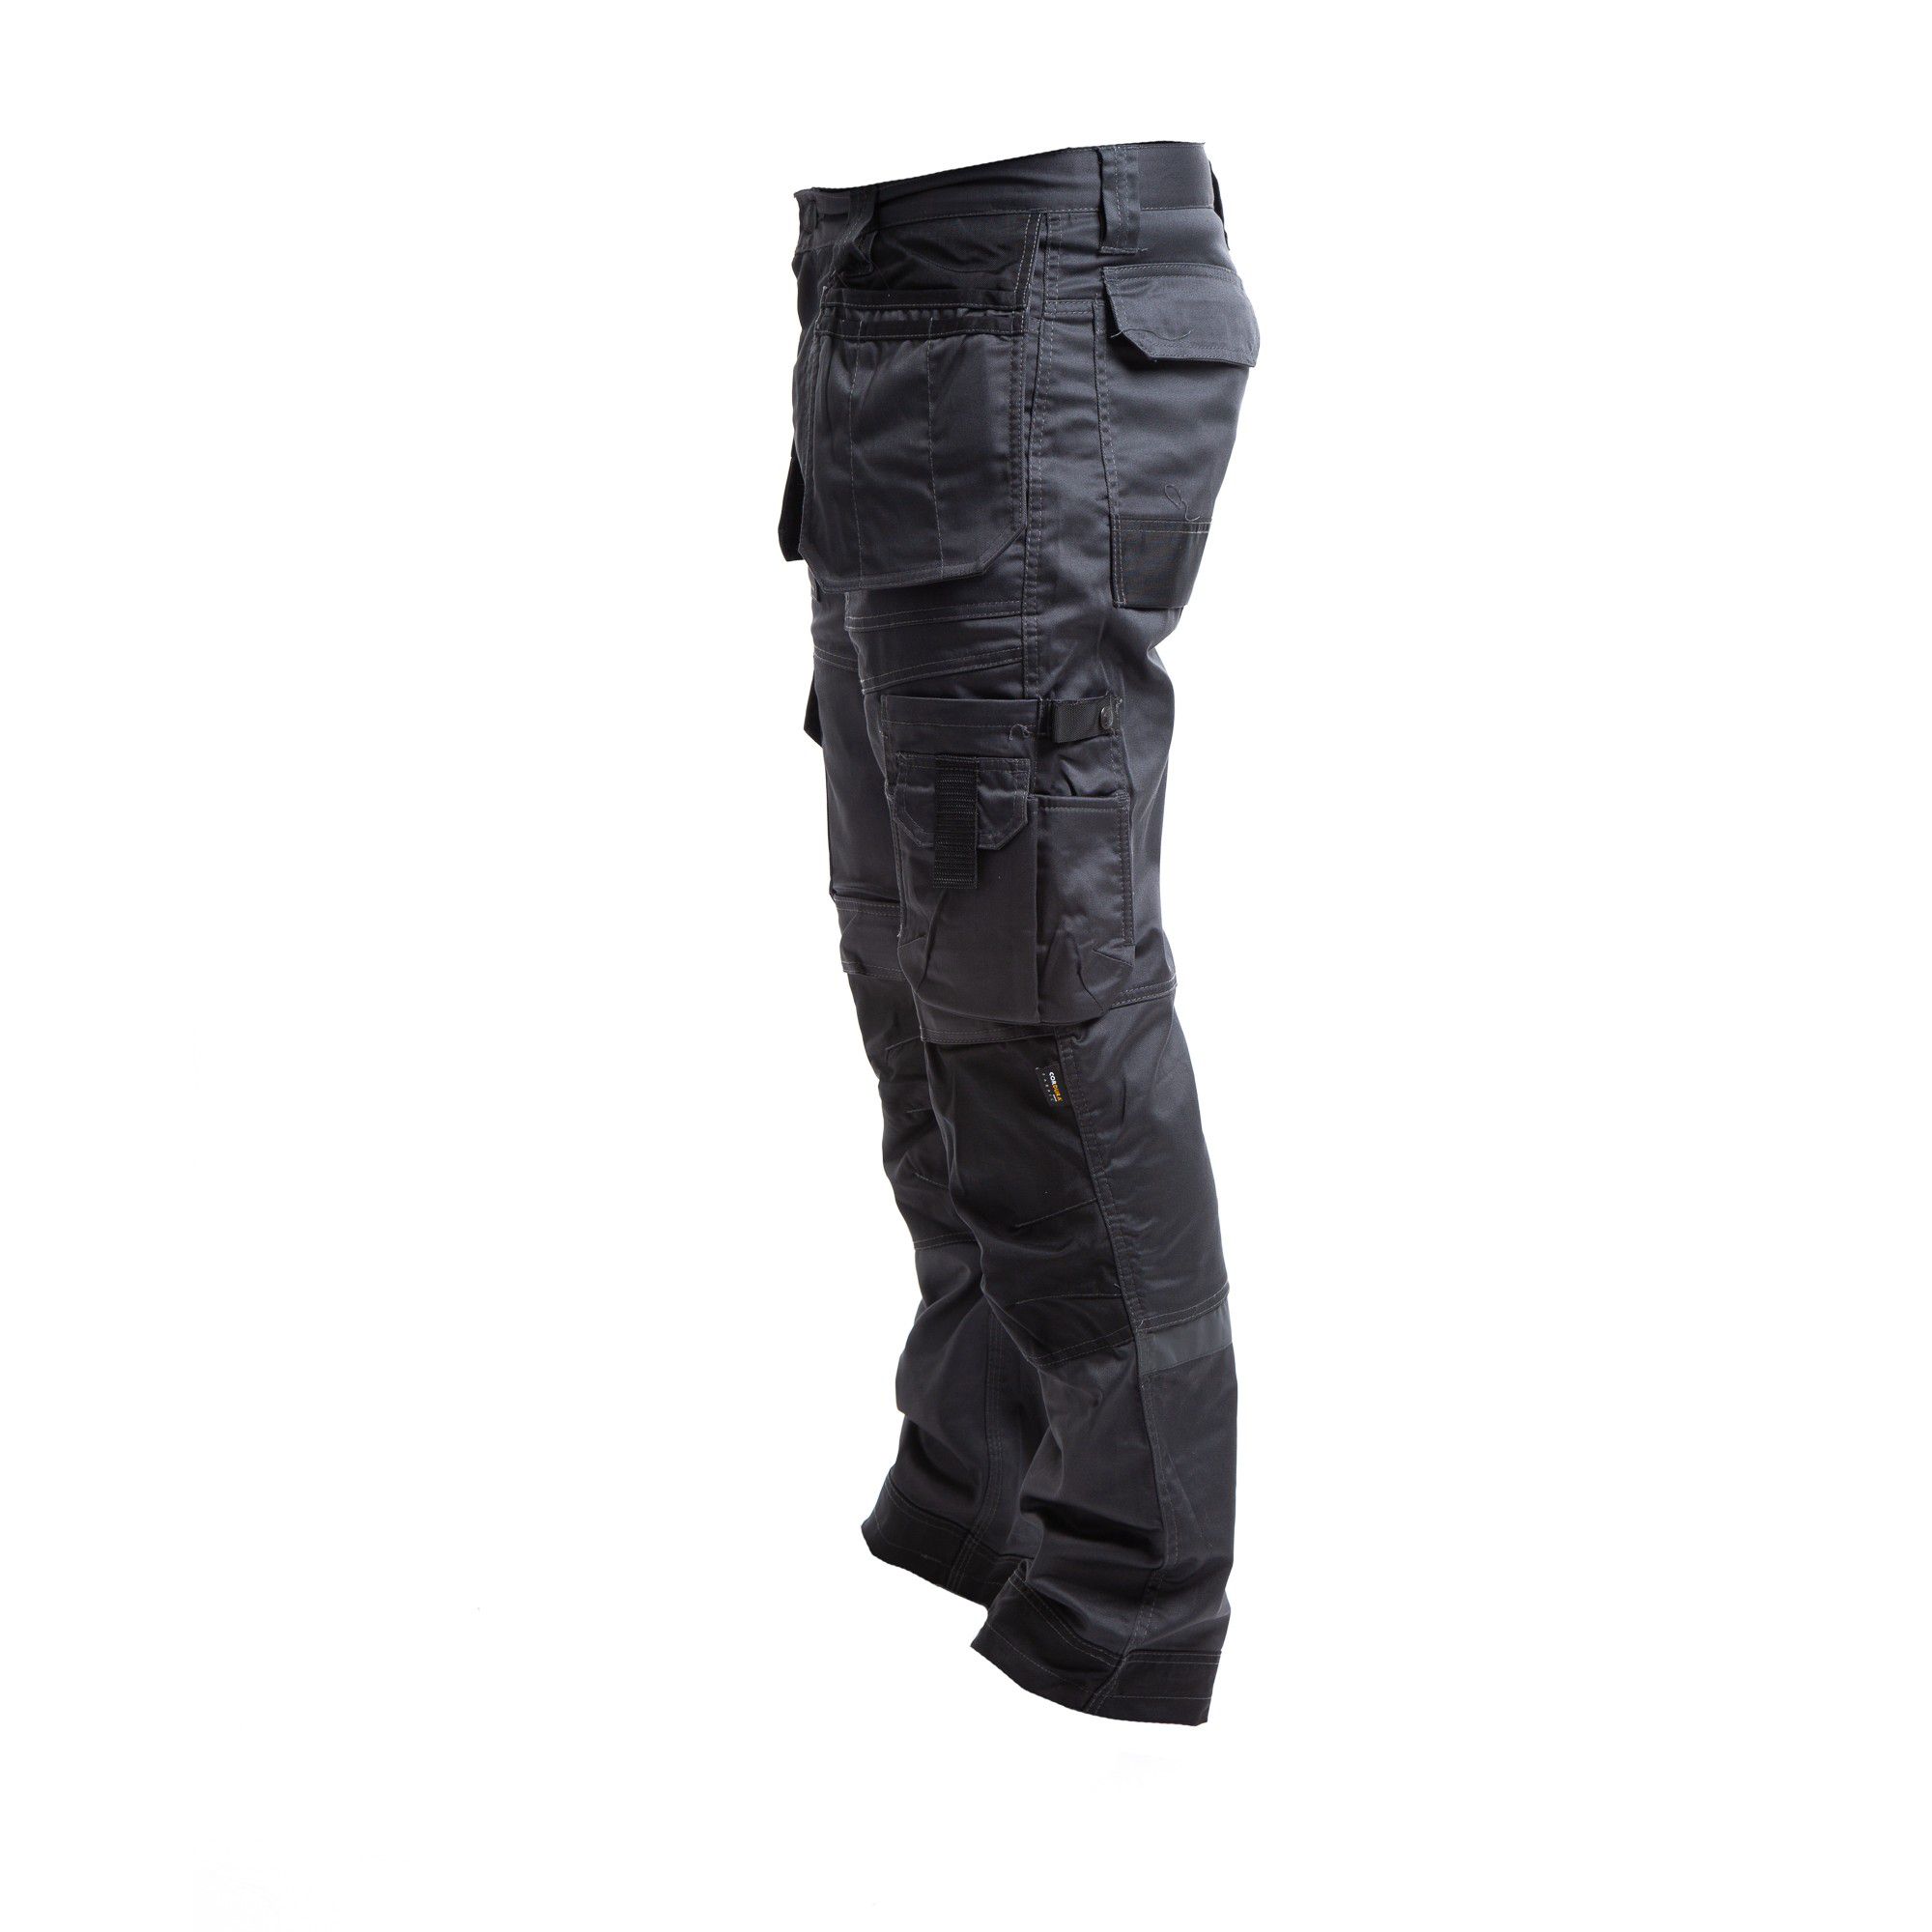 Apache Industrial Wear Grey & black Men's Holster pocket trousers, W32" L31"